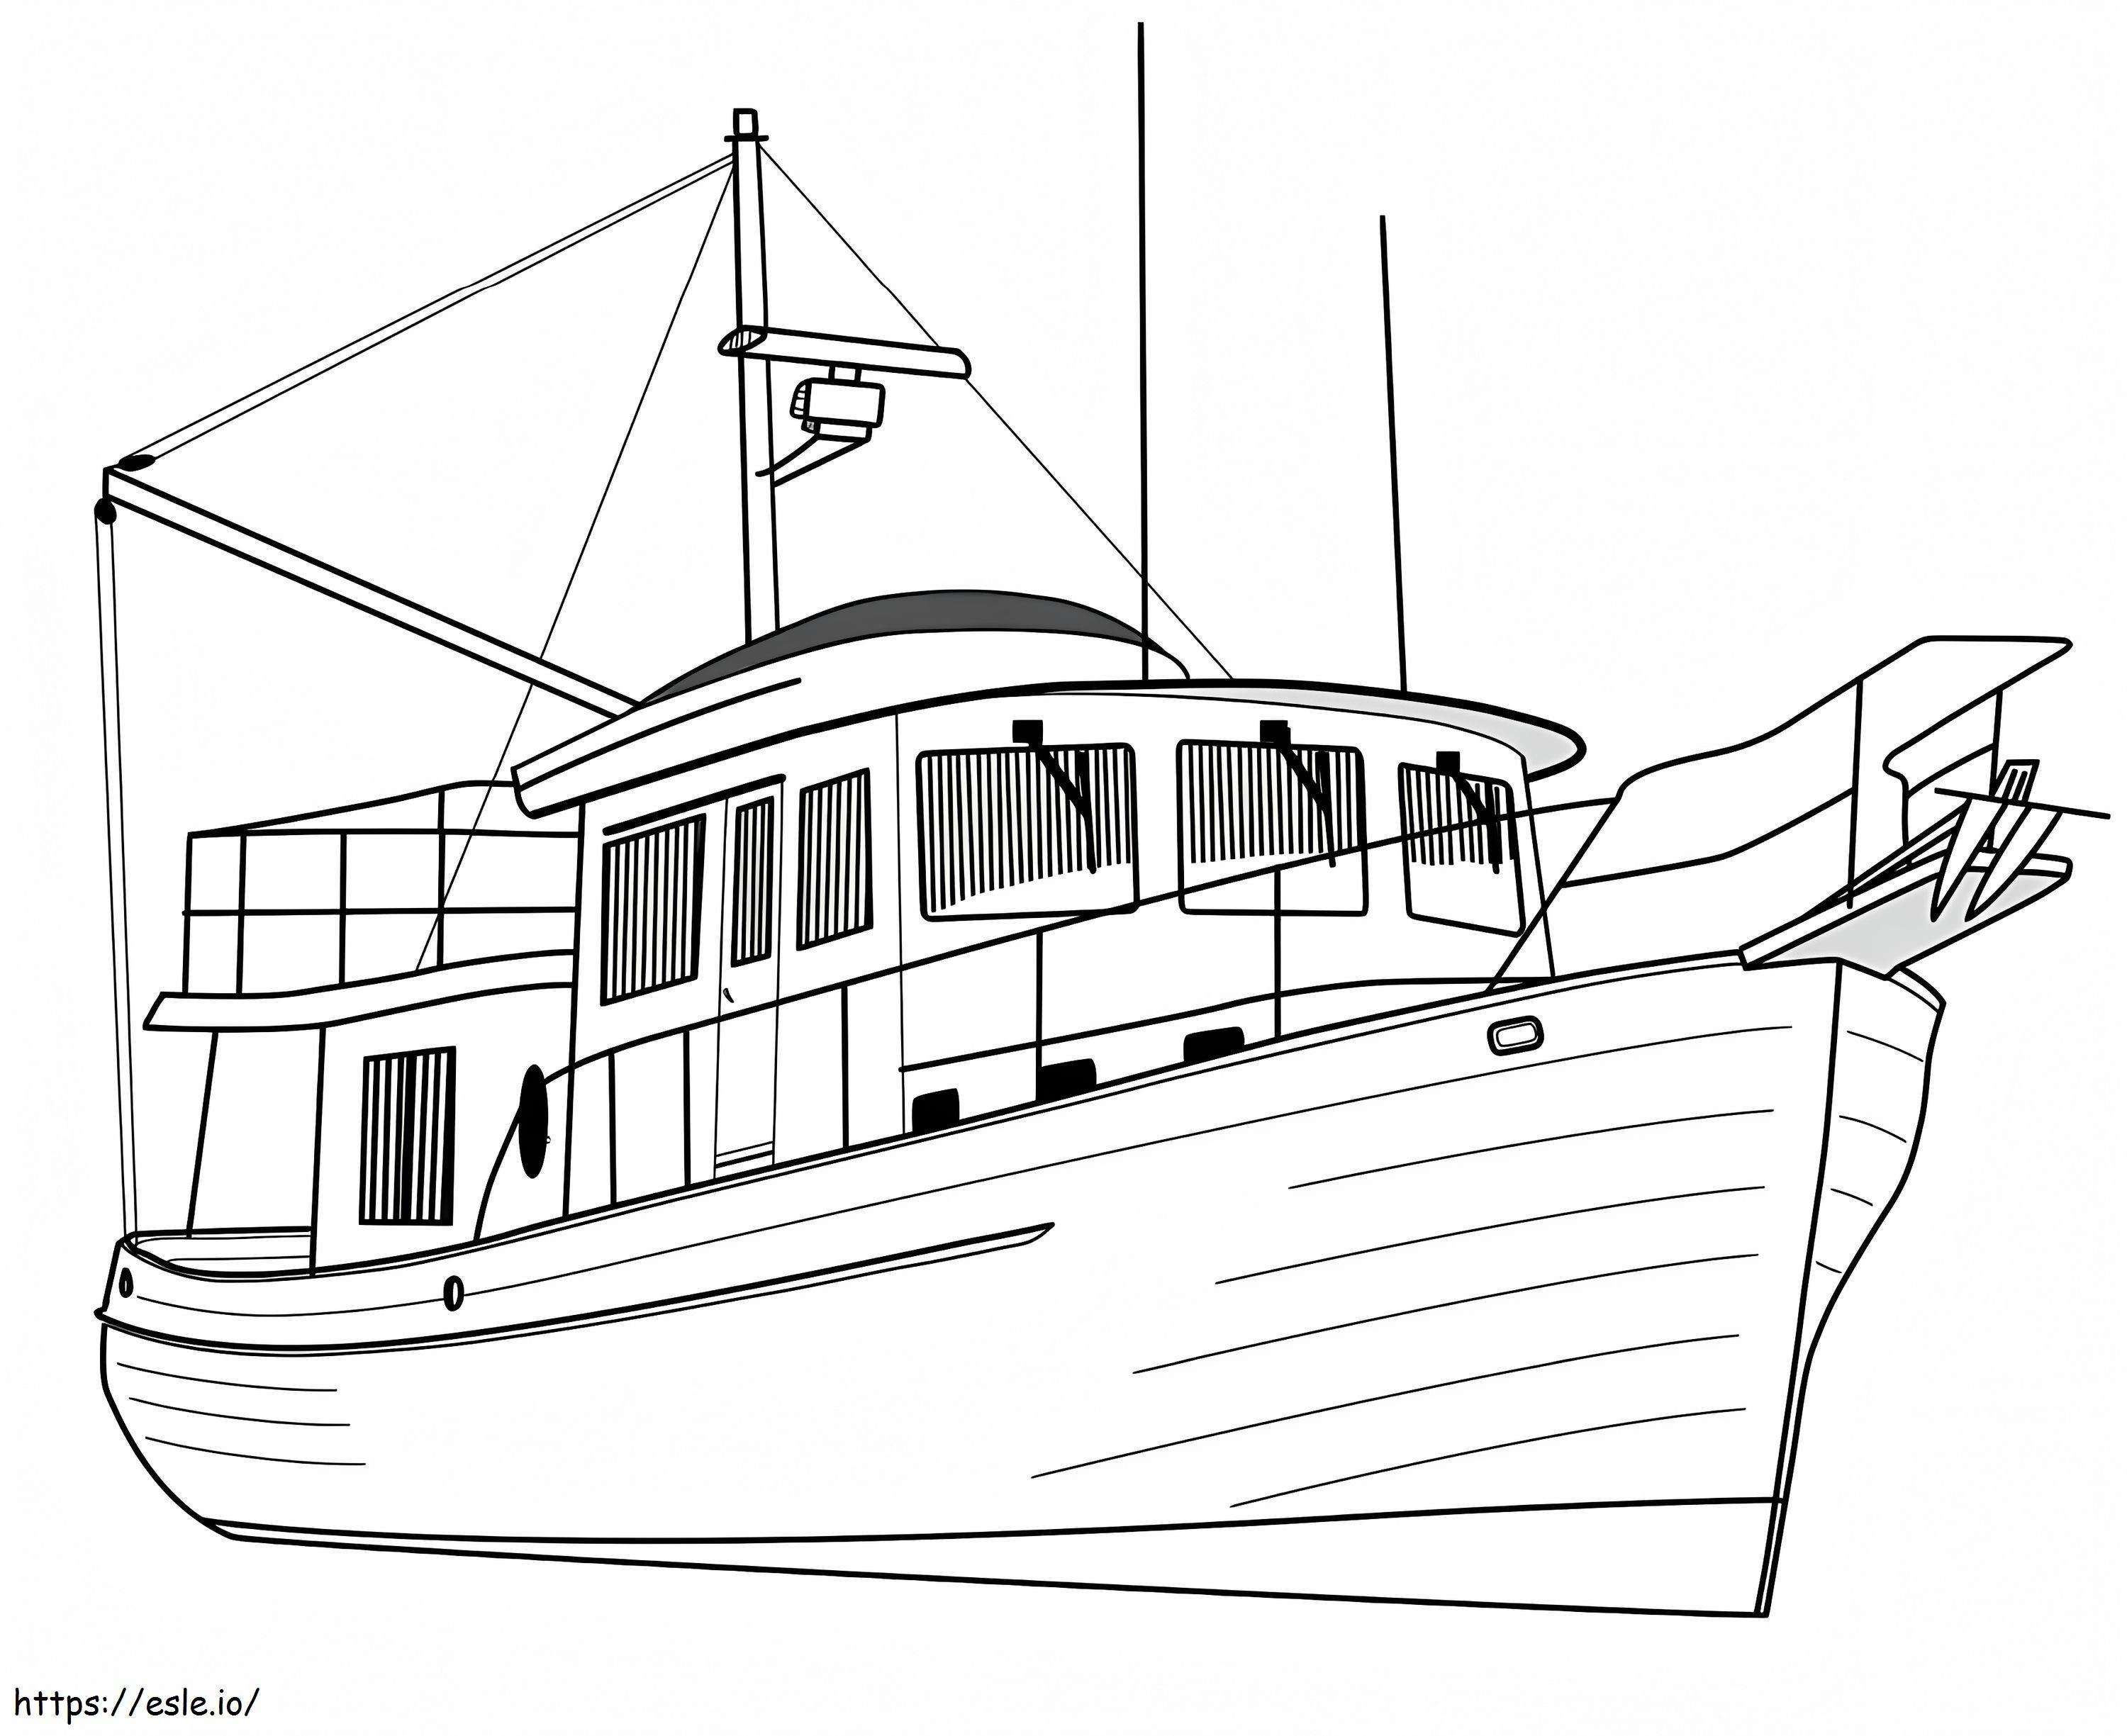  Luksusowy jacht trawlerowy A4 kolorowanka